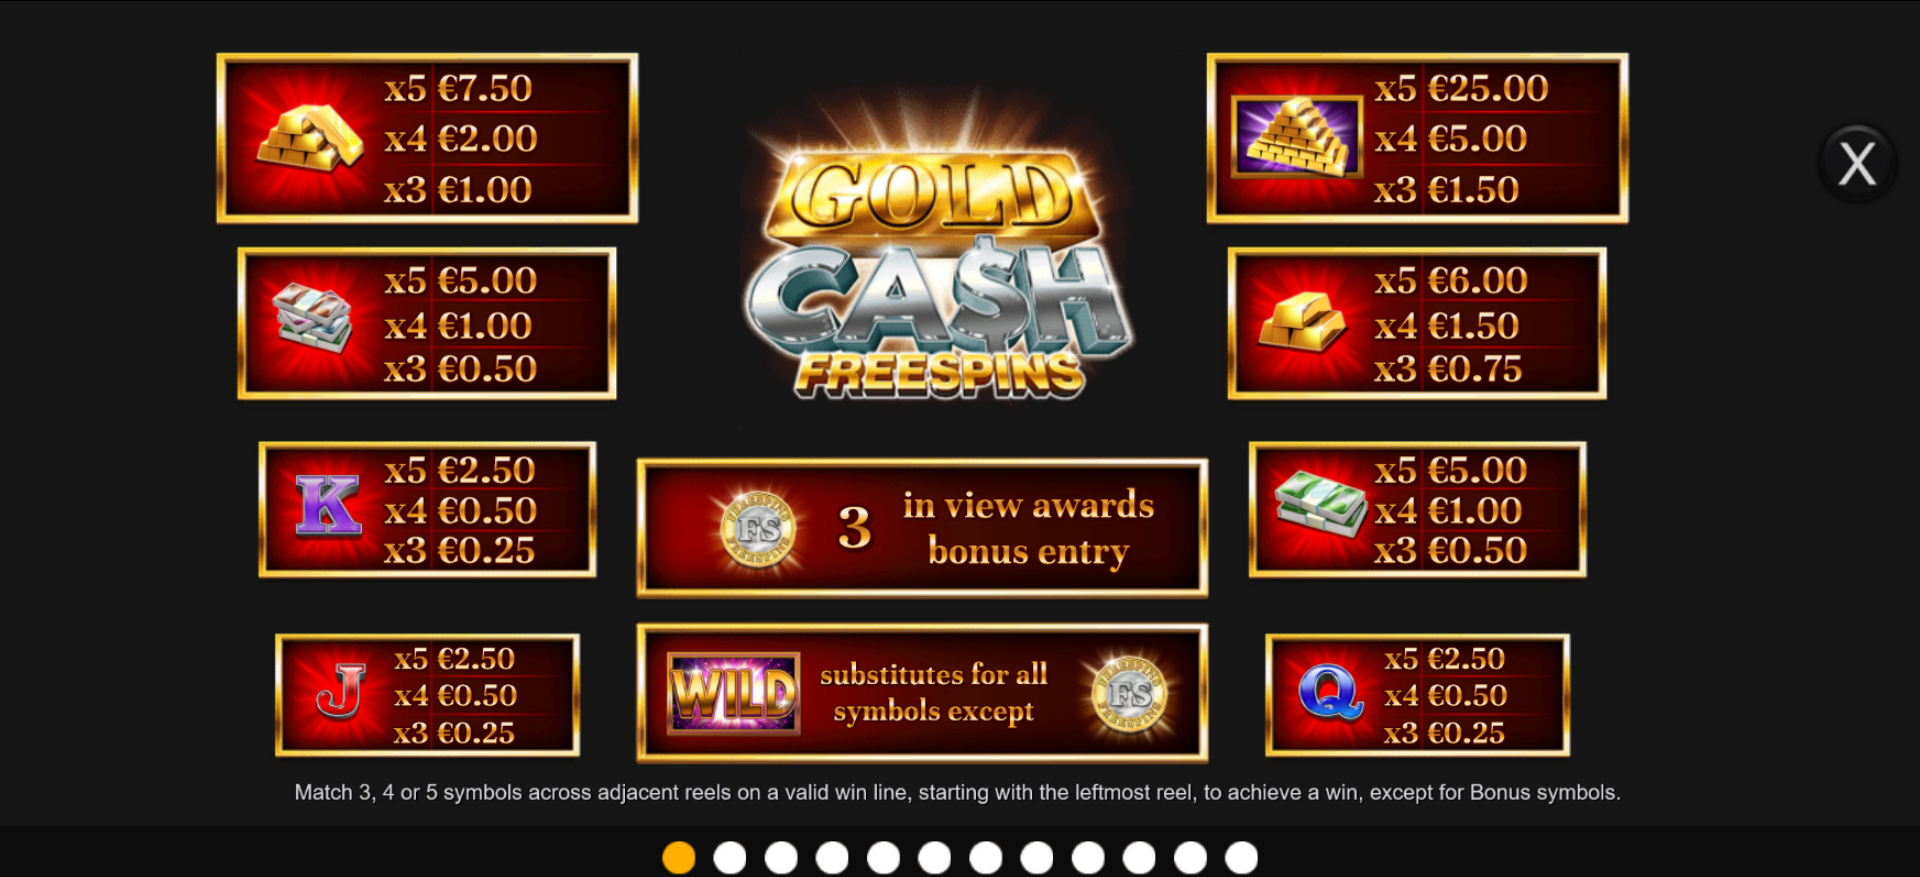 tabella dei simboli della slot machine gold cash freespins